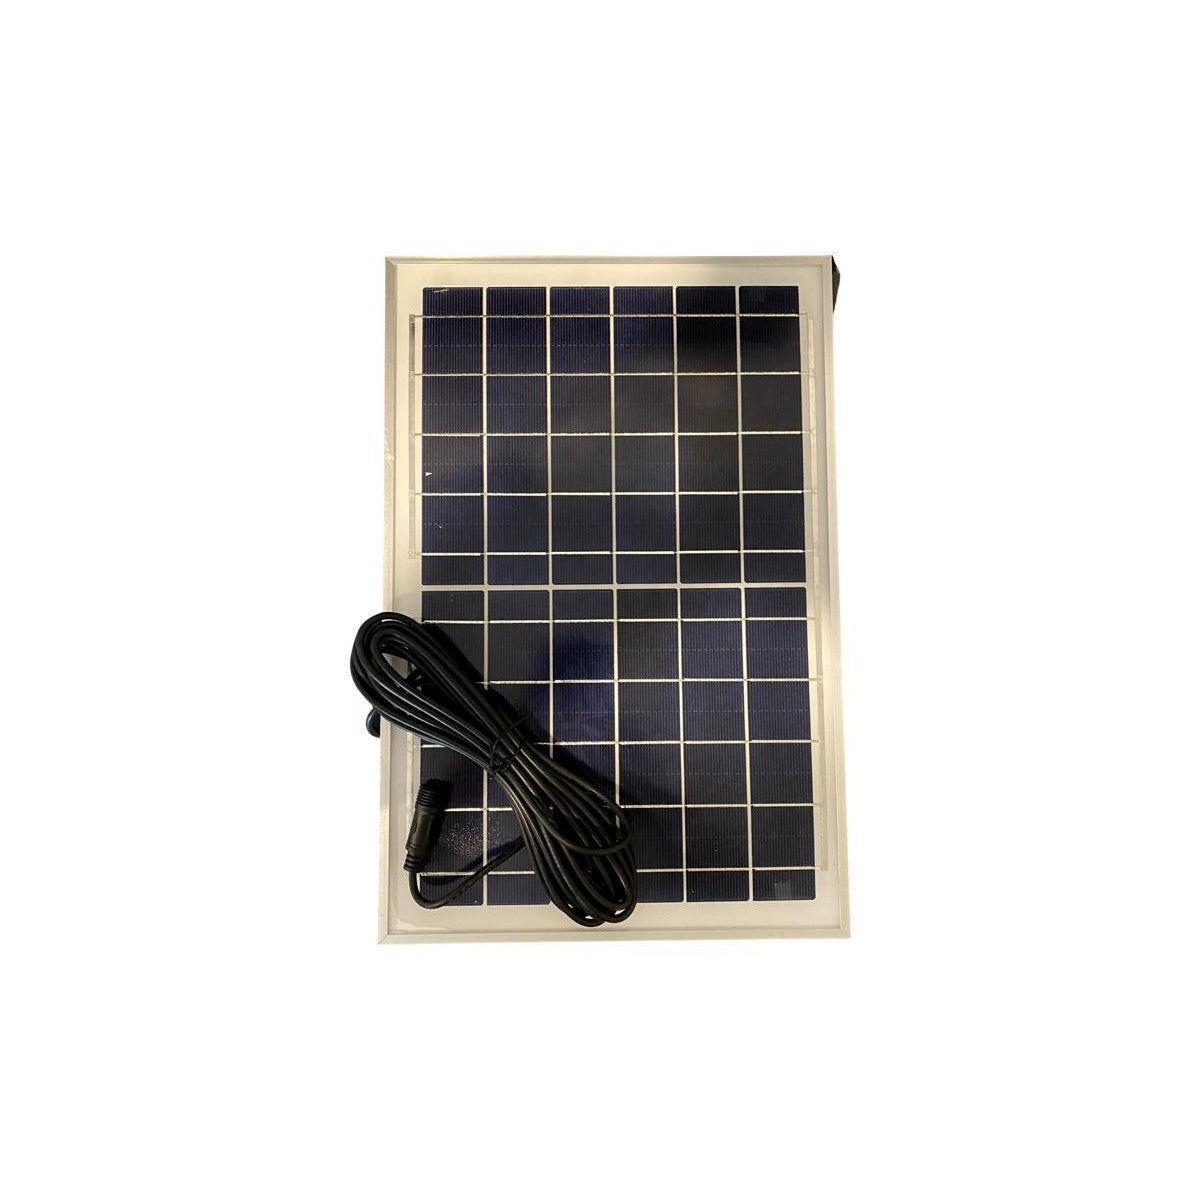 Foco Led Con Placa Solar Y Sensor 60w